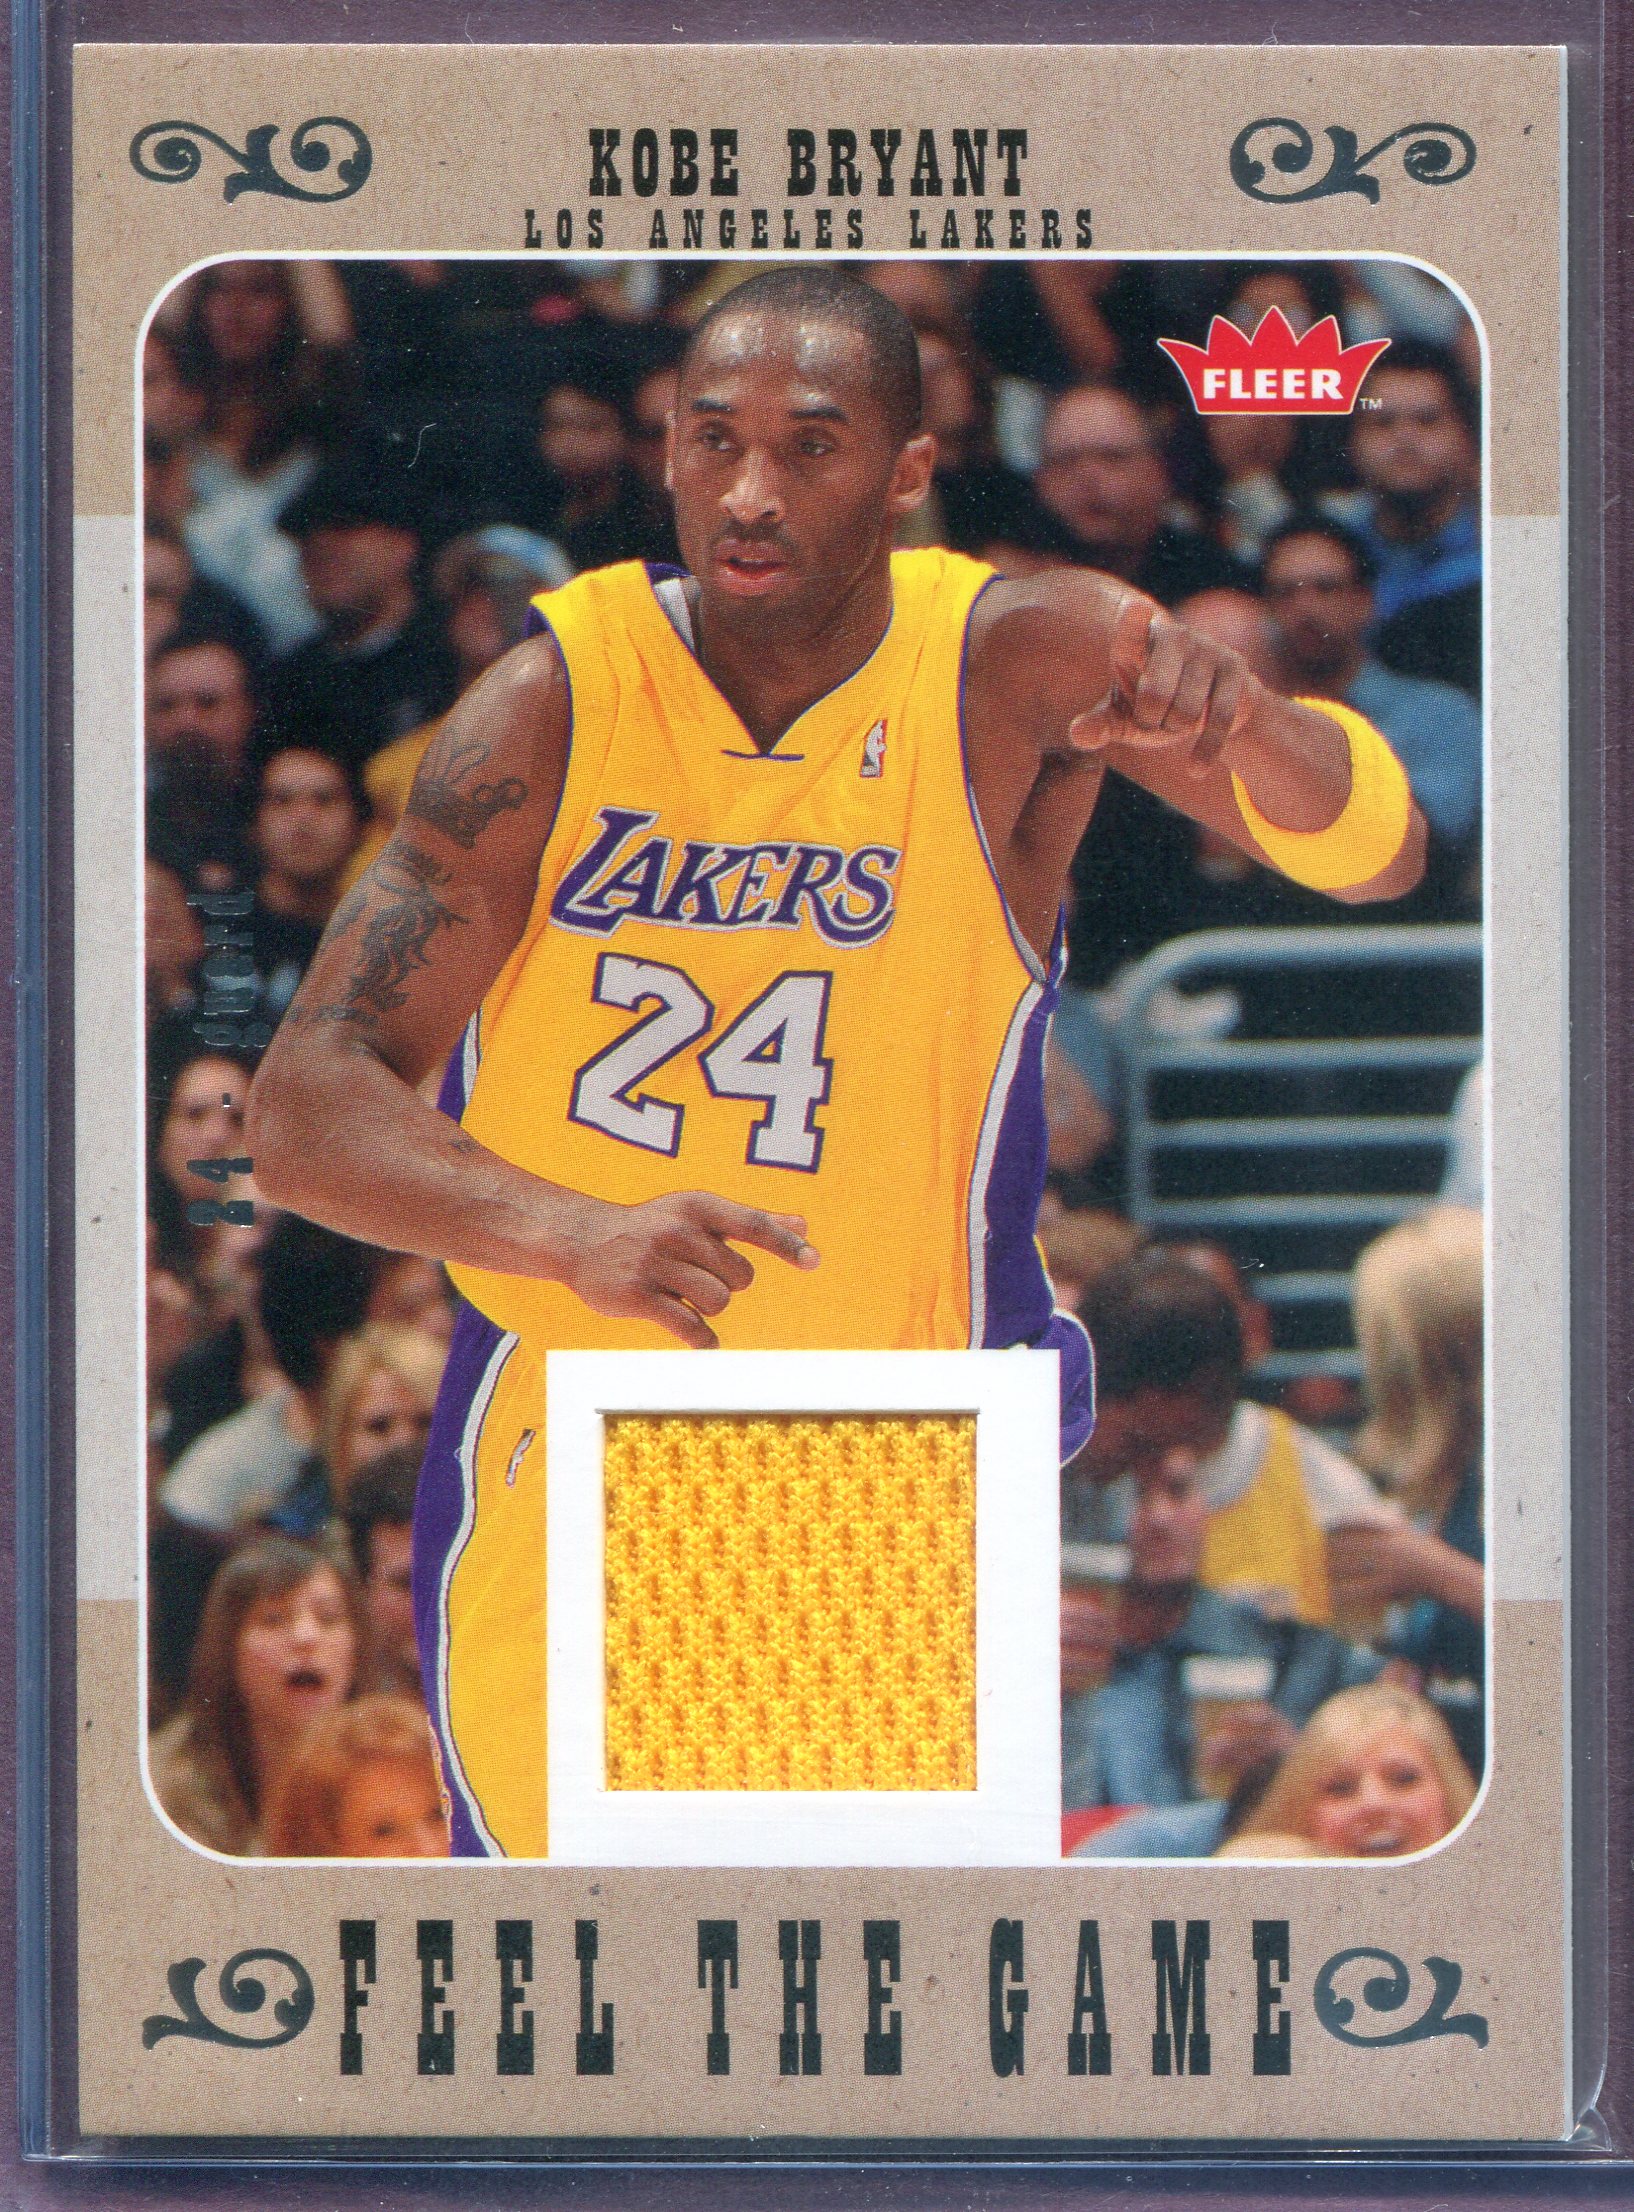 Kobe Bryant 1999-00 Fleer Focus Soar Subjects Card #8 of 15 SS (Los Angeles  Lakers)